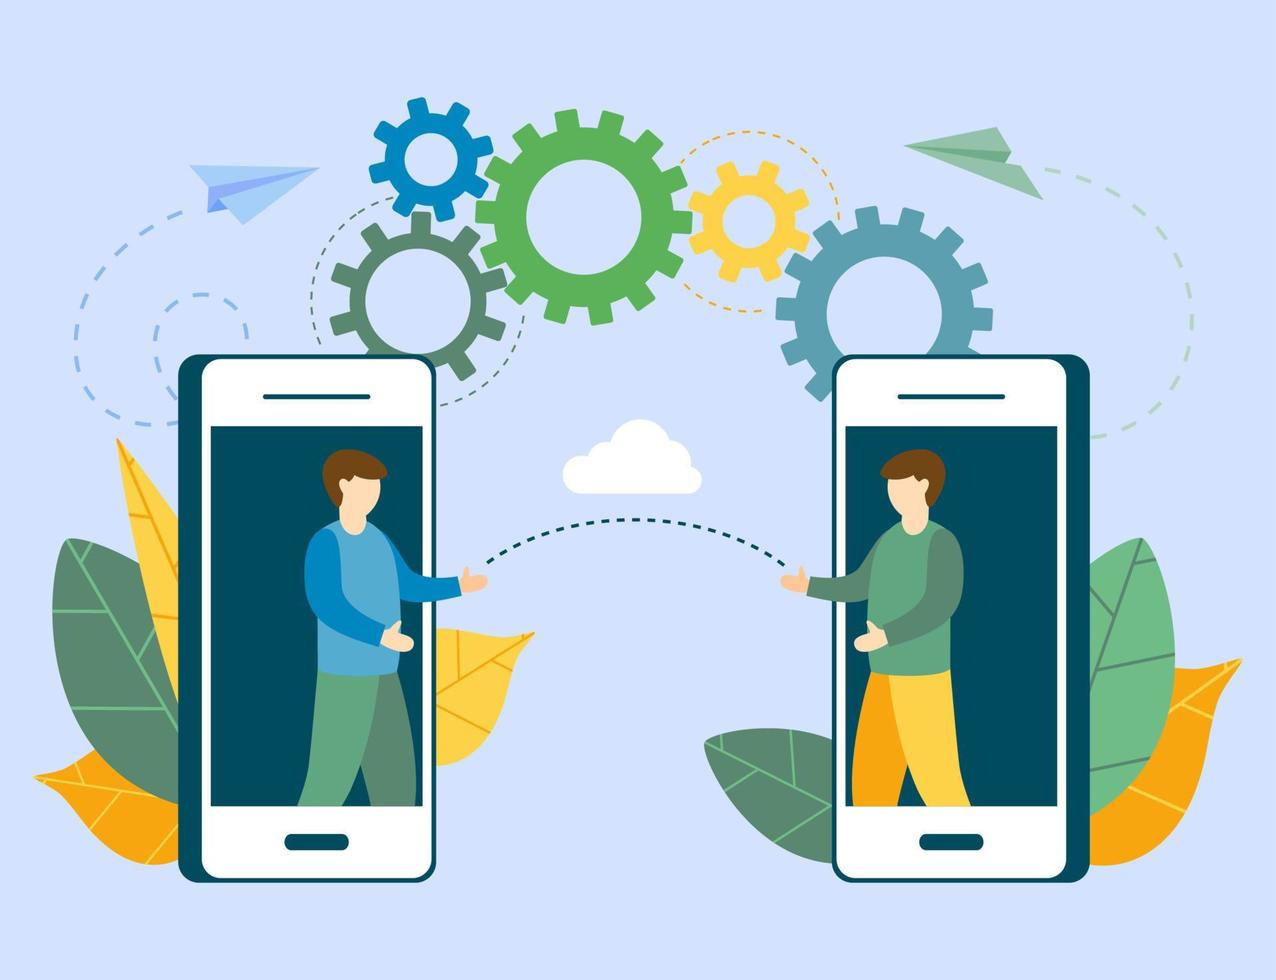 bedrijf communicatie sociaal netwerken met smartphone mobiel vector